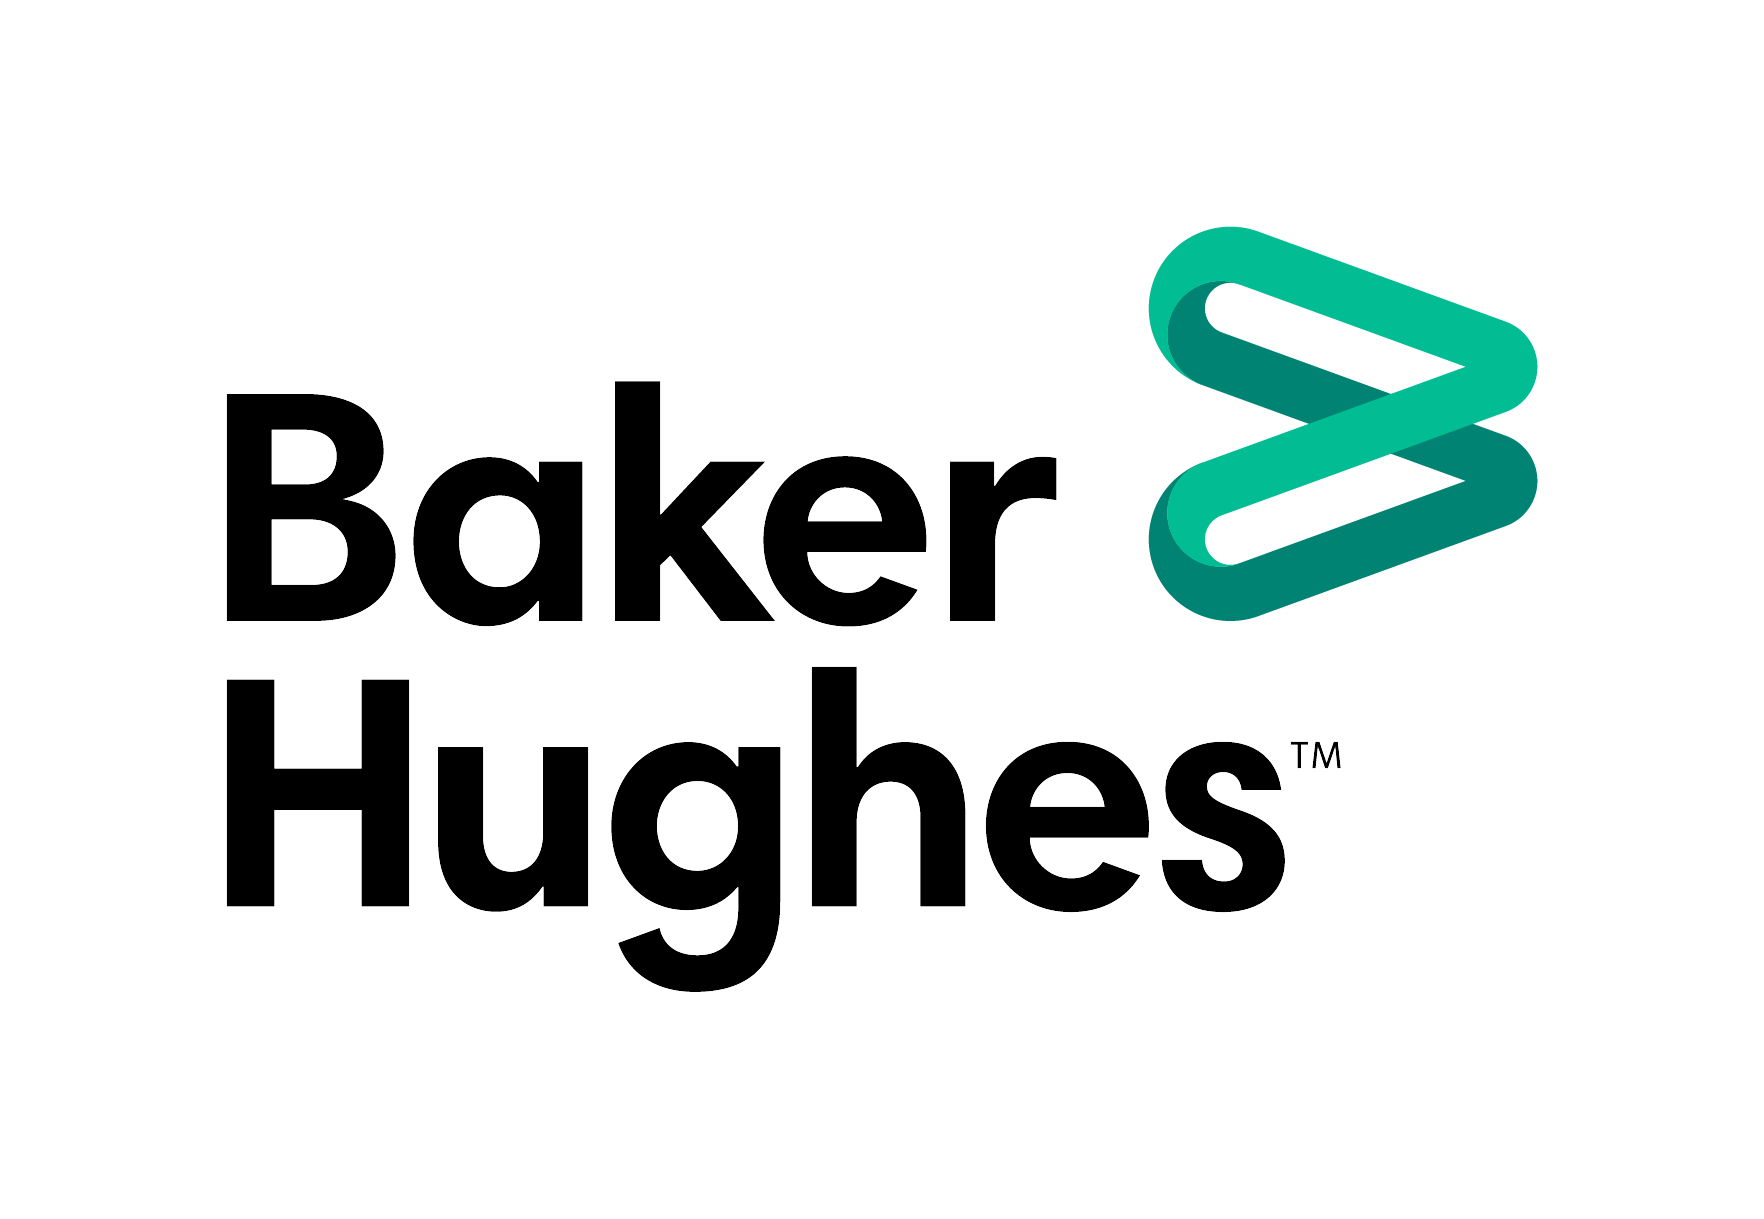 Baker-Hughes